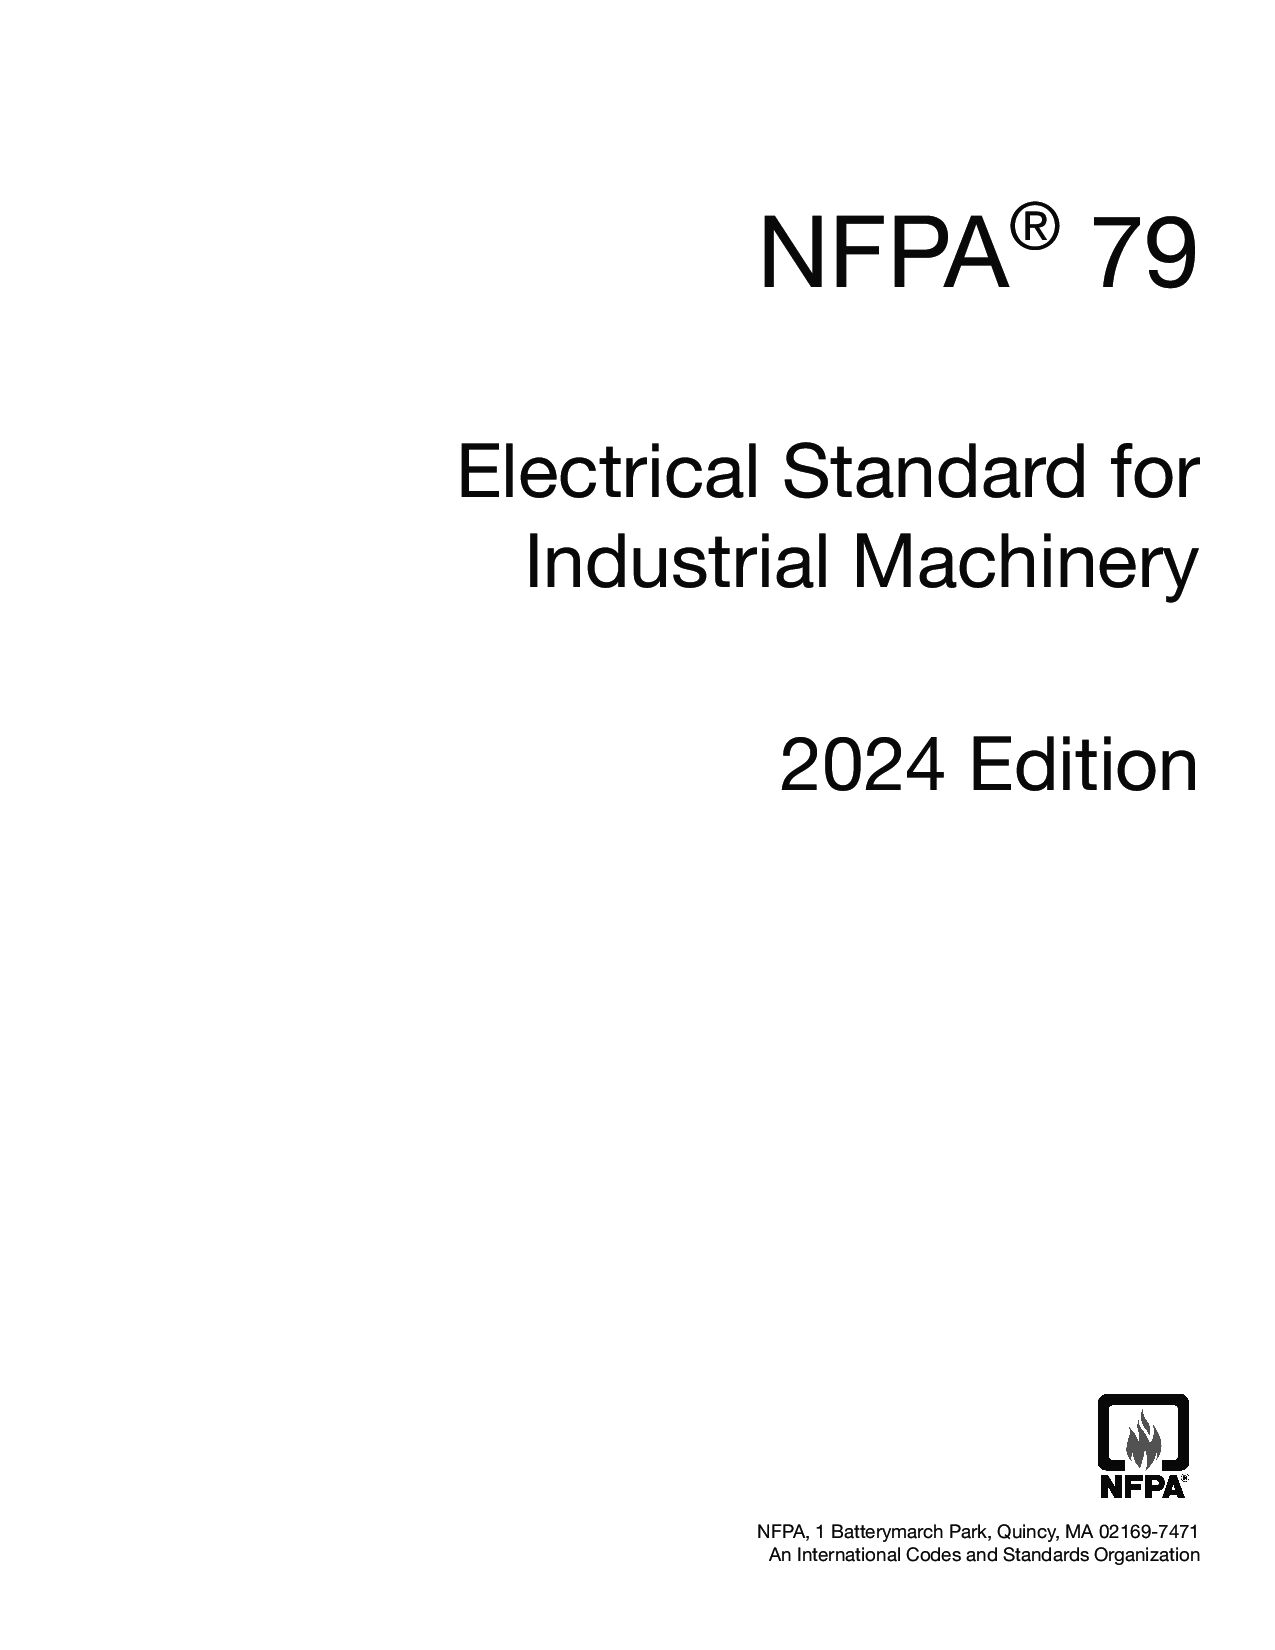 NFPA 79-2024